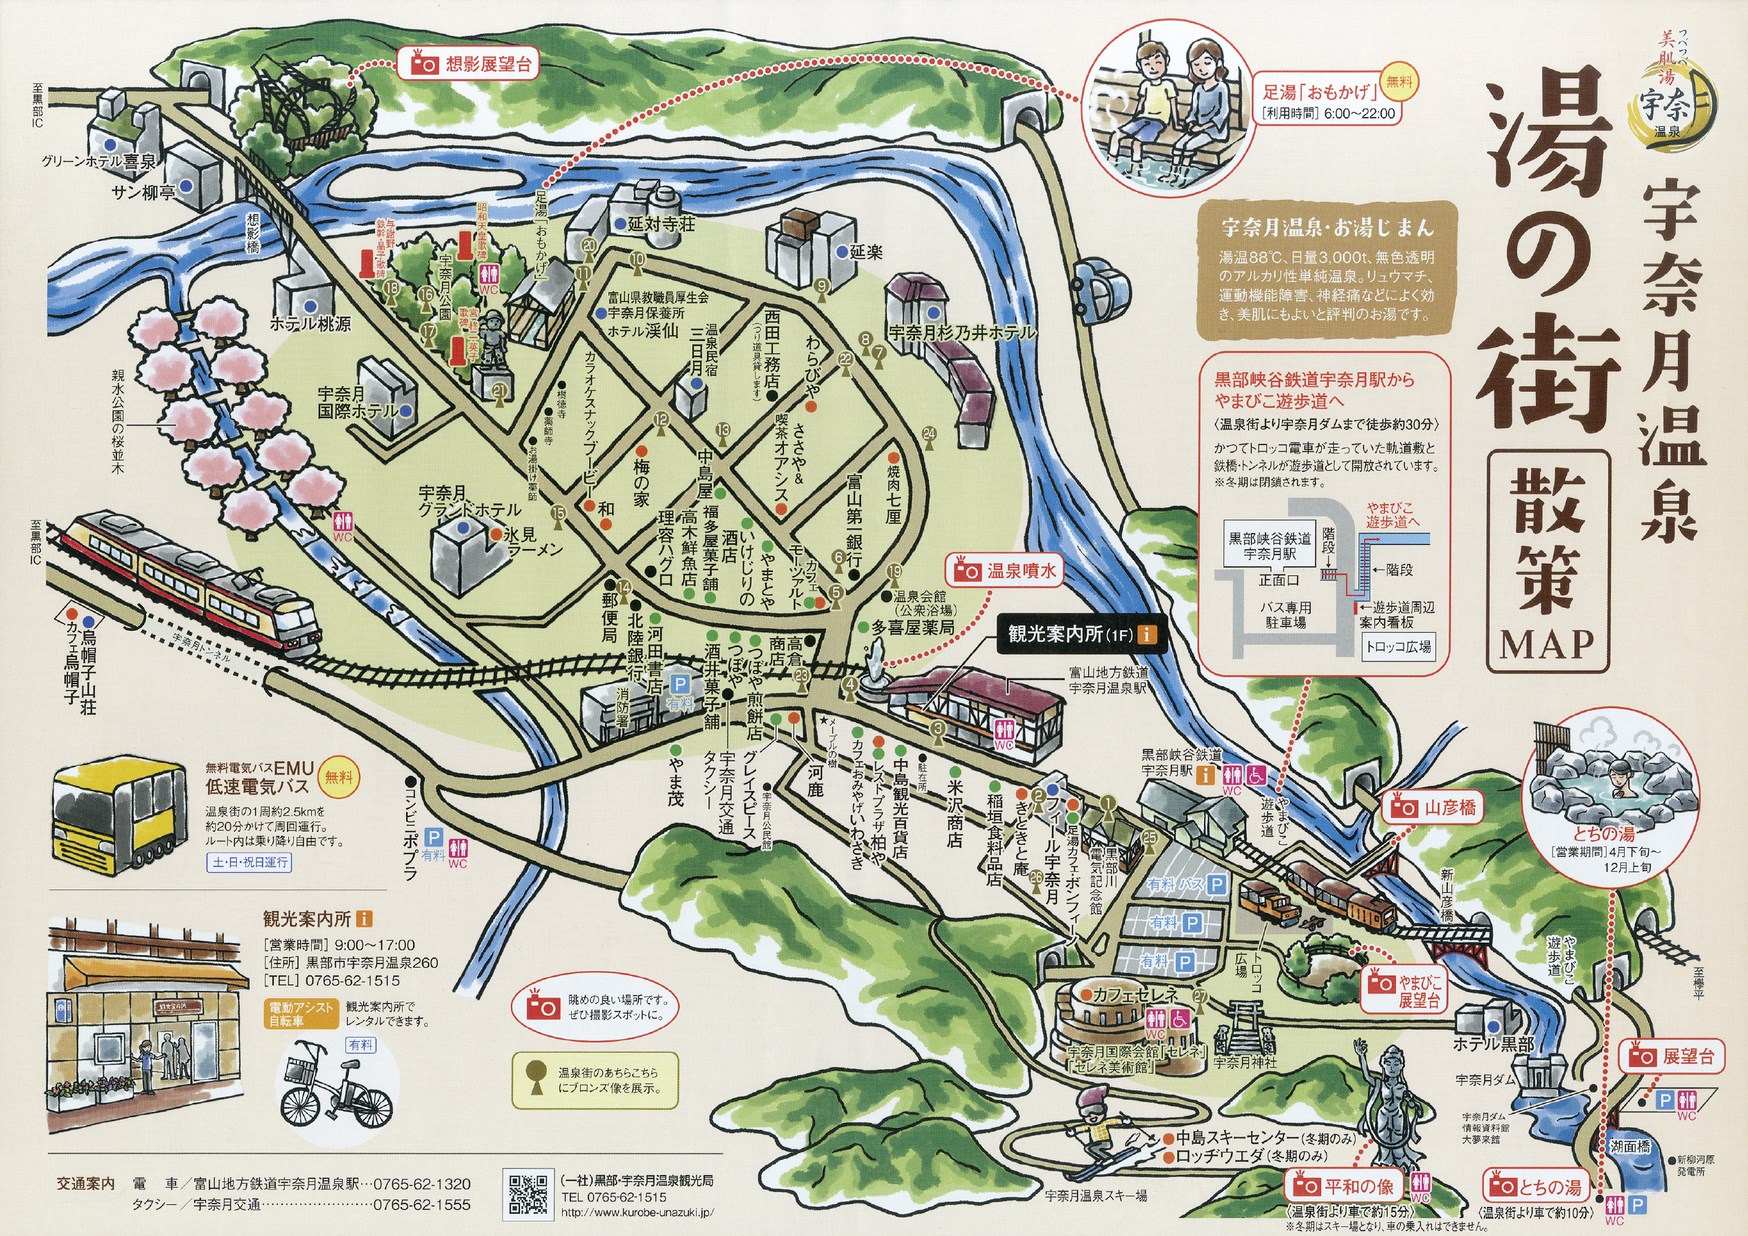 宇奈月温泉 湯の街散策map トヤマイーブックス Toyama Ebooks 富山の電子書籍サイト